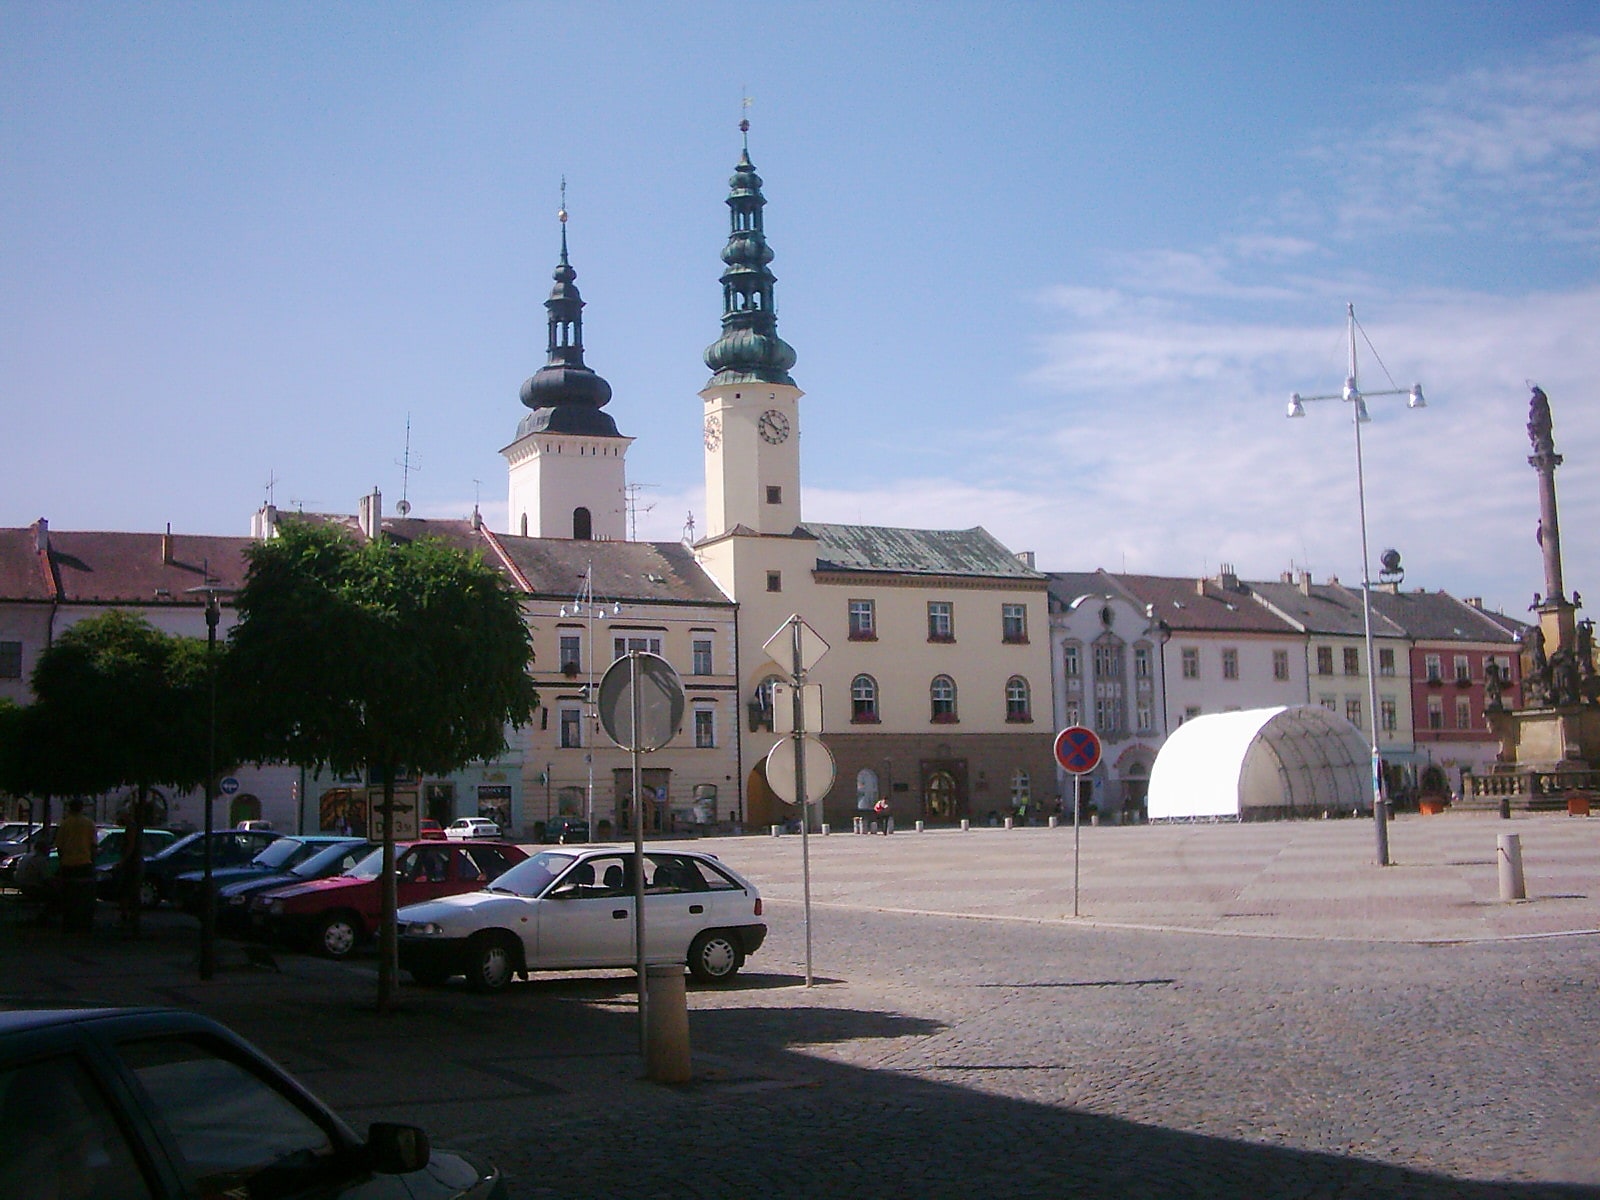 Moravská Třebová, Czech Republic